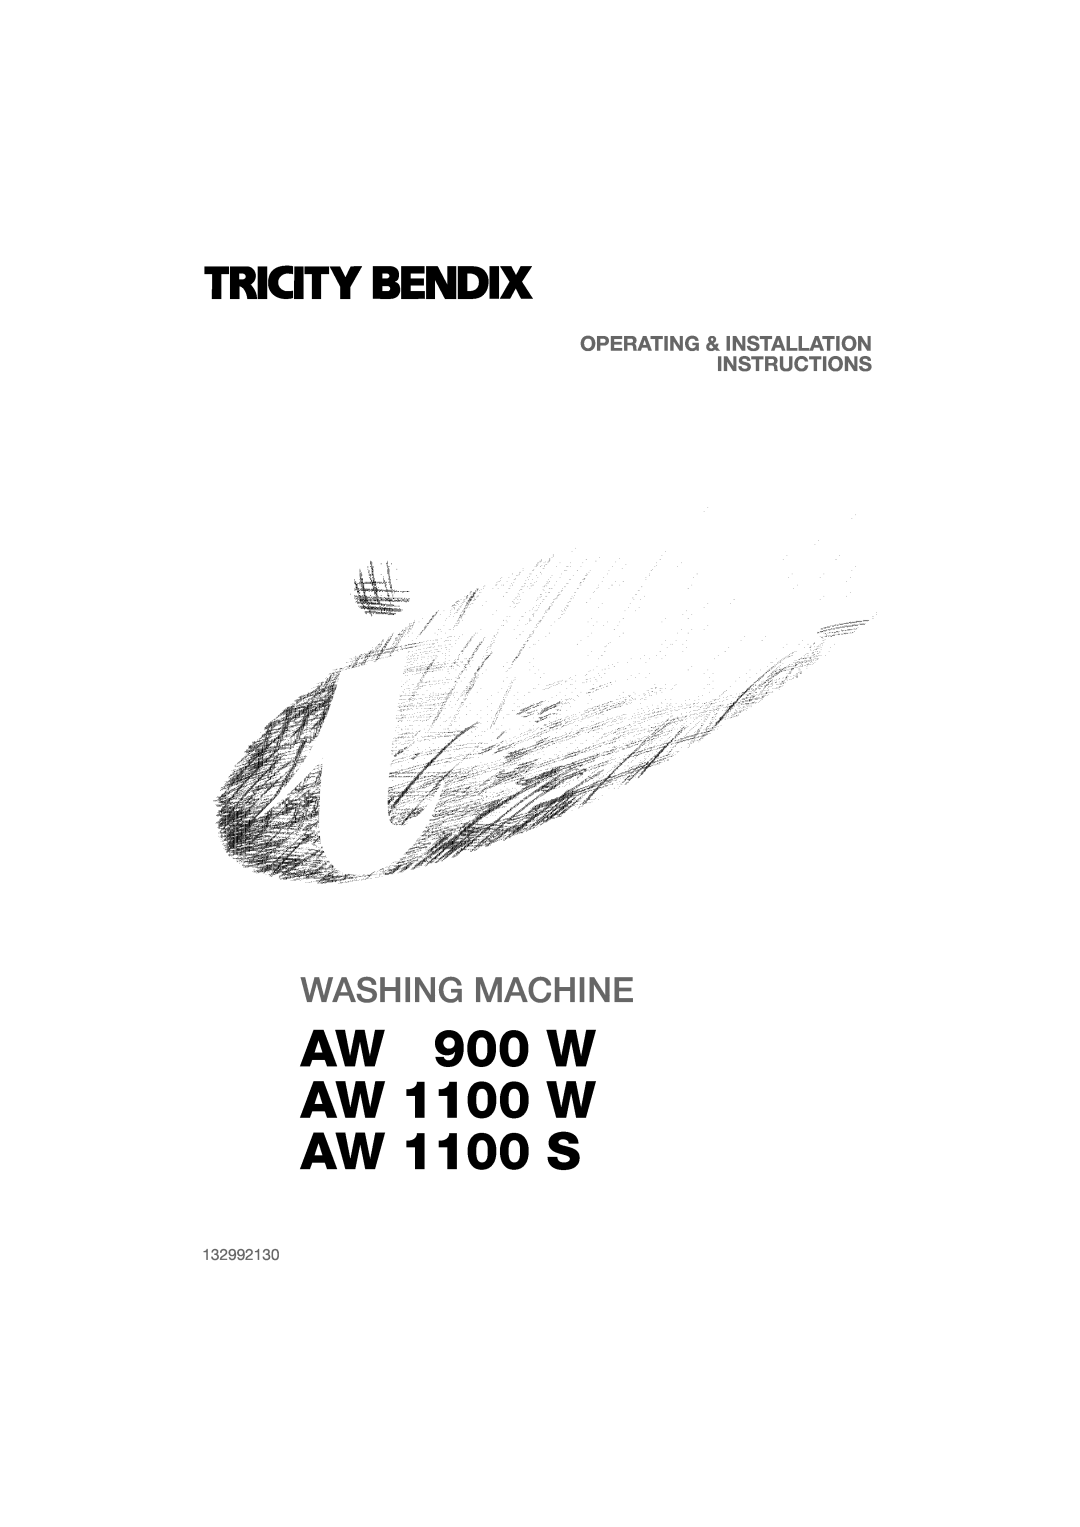 Tricity Bendix installation instructions 132992130, AW 900 W AW 1100 W AW 1100 S, Washing Machine 